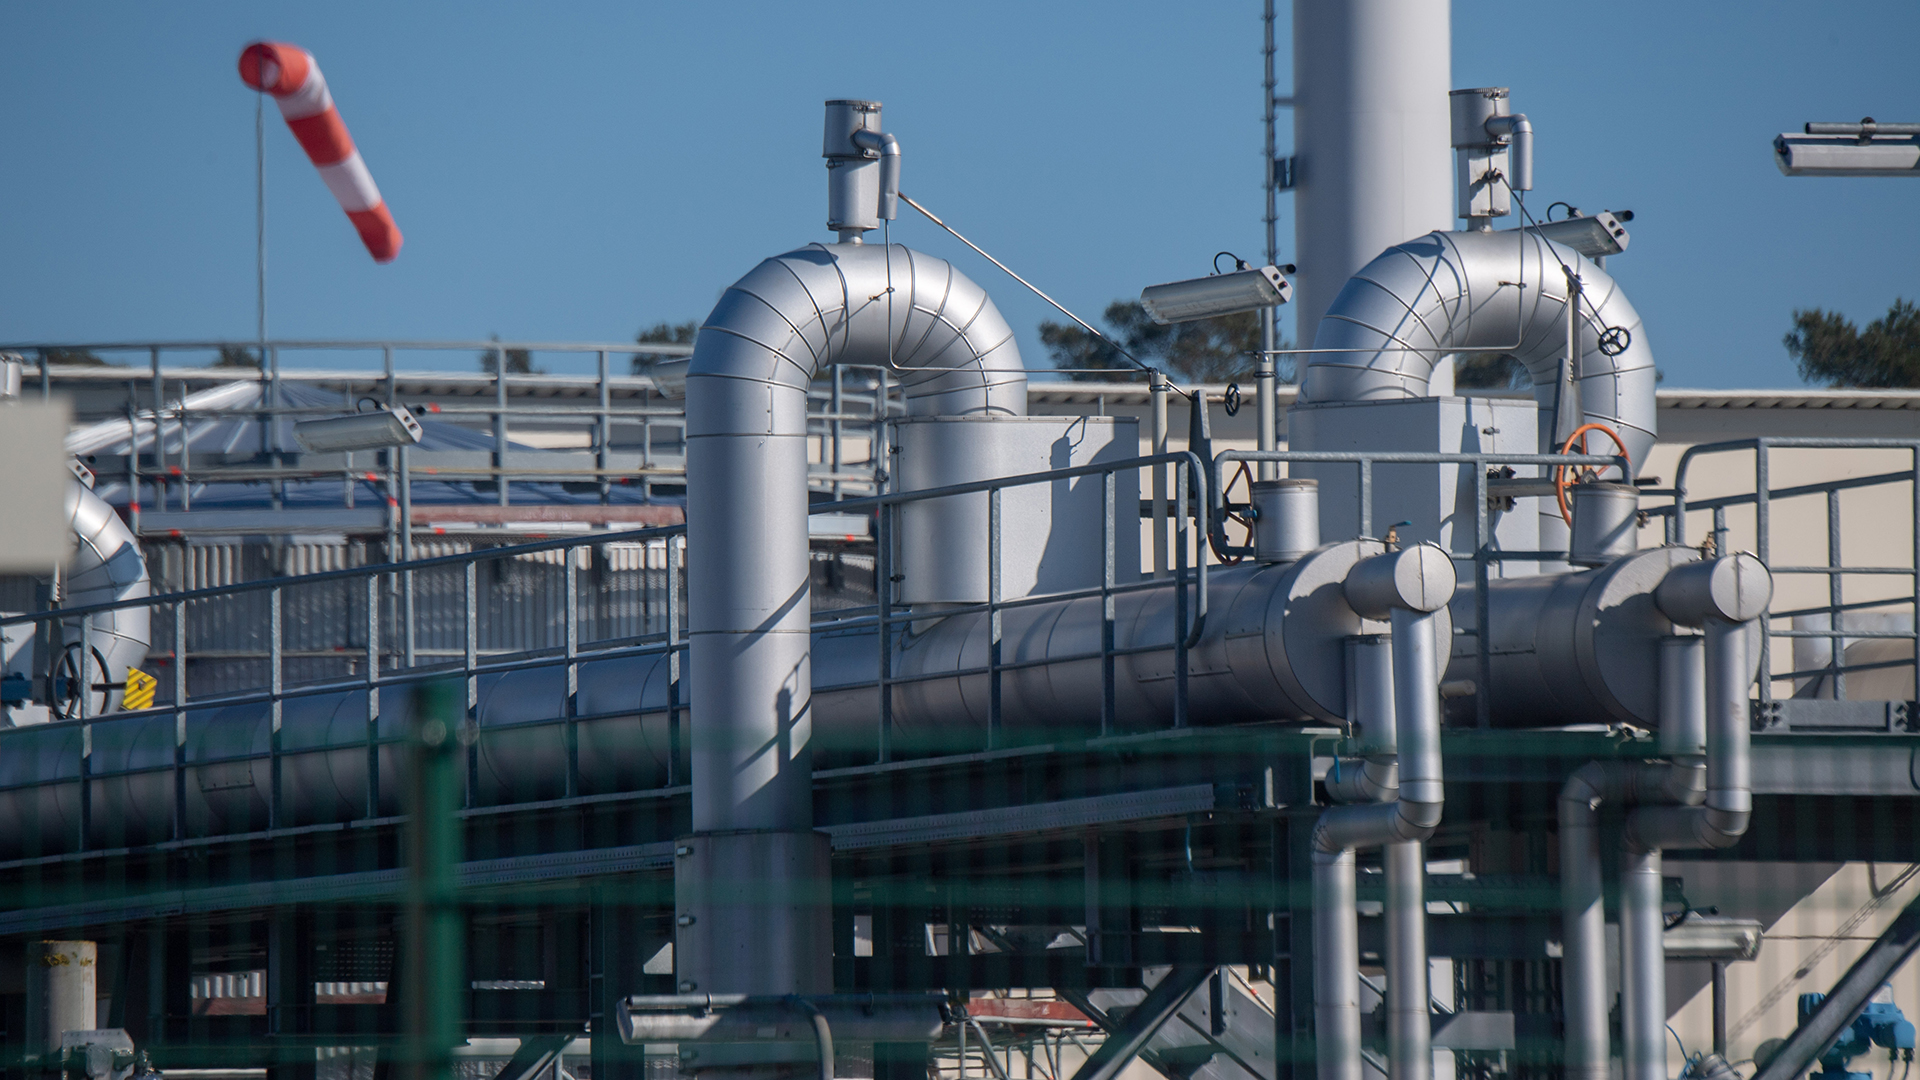 Rohrsysteme und Absperrvorrichtungen in der Gasempfangsstation der Ostseepipeline Nord Stream 1 und der Übernahmestation der Ferngasleitung OPAL. | picture alliance/dpa